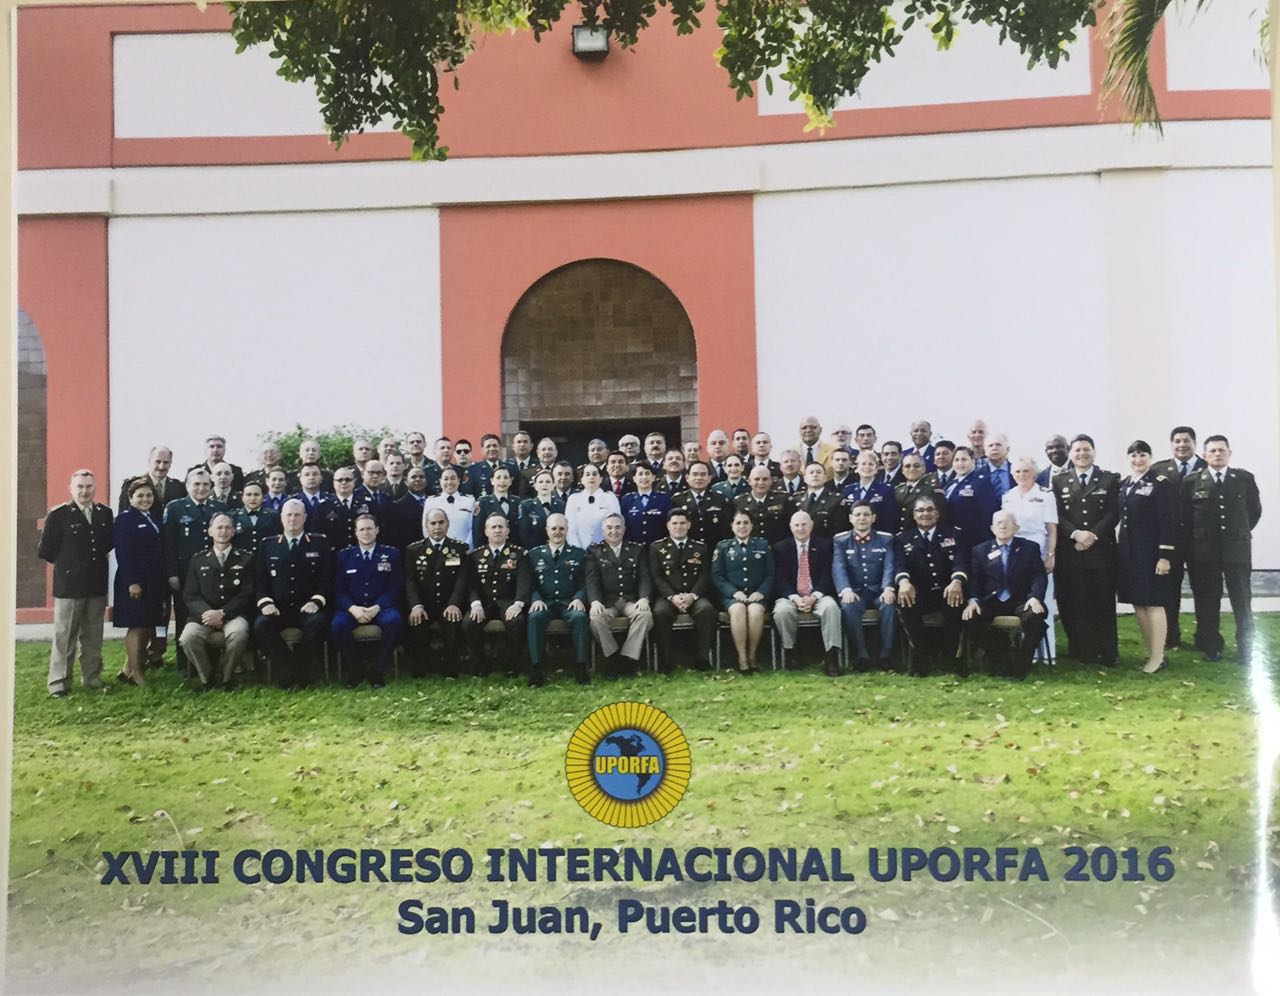 XVIII Congreso Internacional en San Juan de Puerto Rico, september 15 de 2016